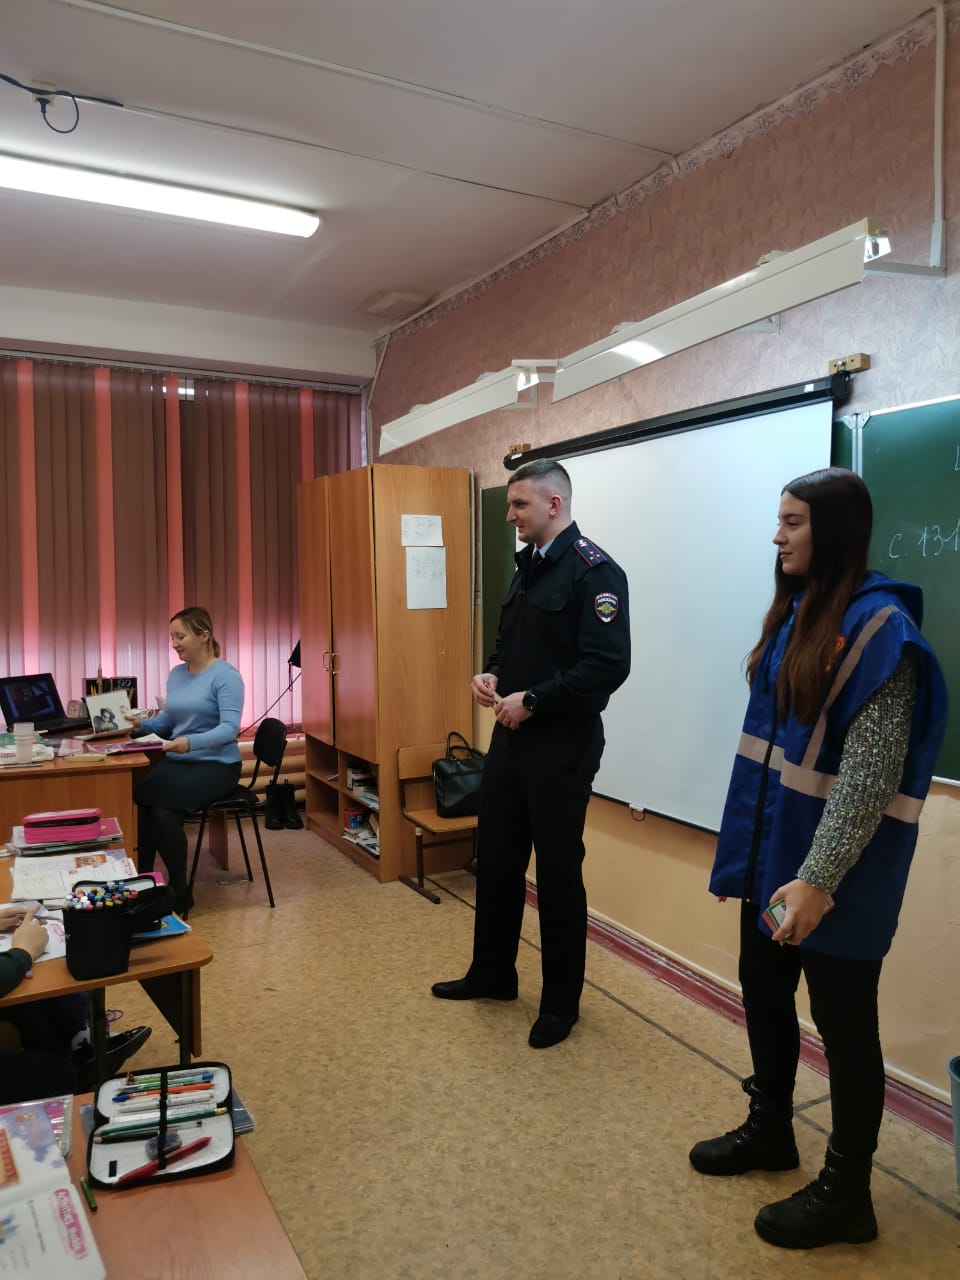 14 ноября сотрудник ГИБДД Иван Сергеевич Максимов провел очередную серию бесед с учащимися о безопасности дорожного движения.